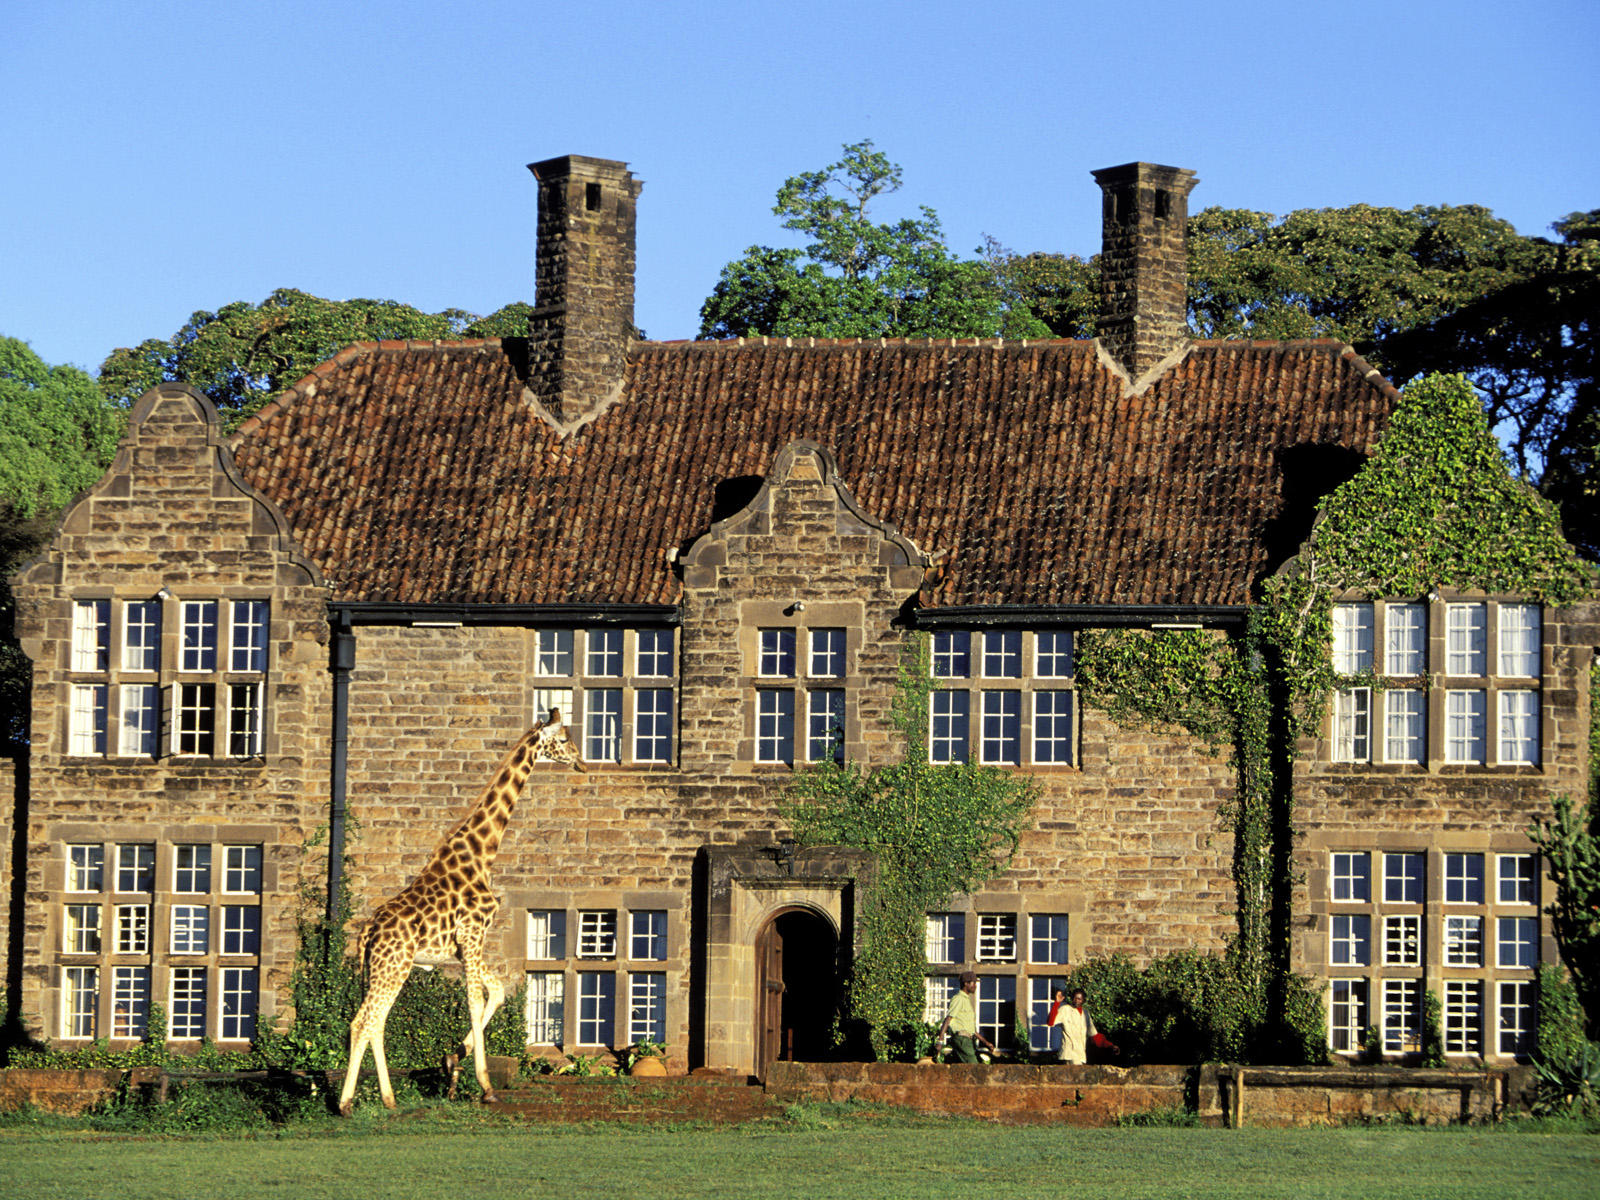 Kenya, Nairobi region, the Giraffe Manor